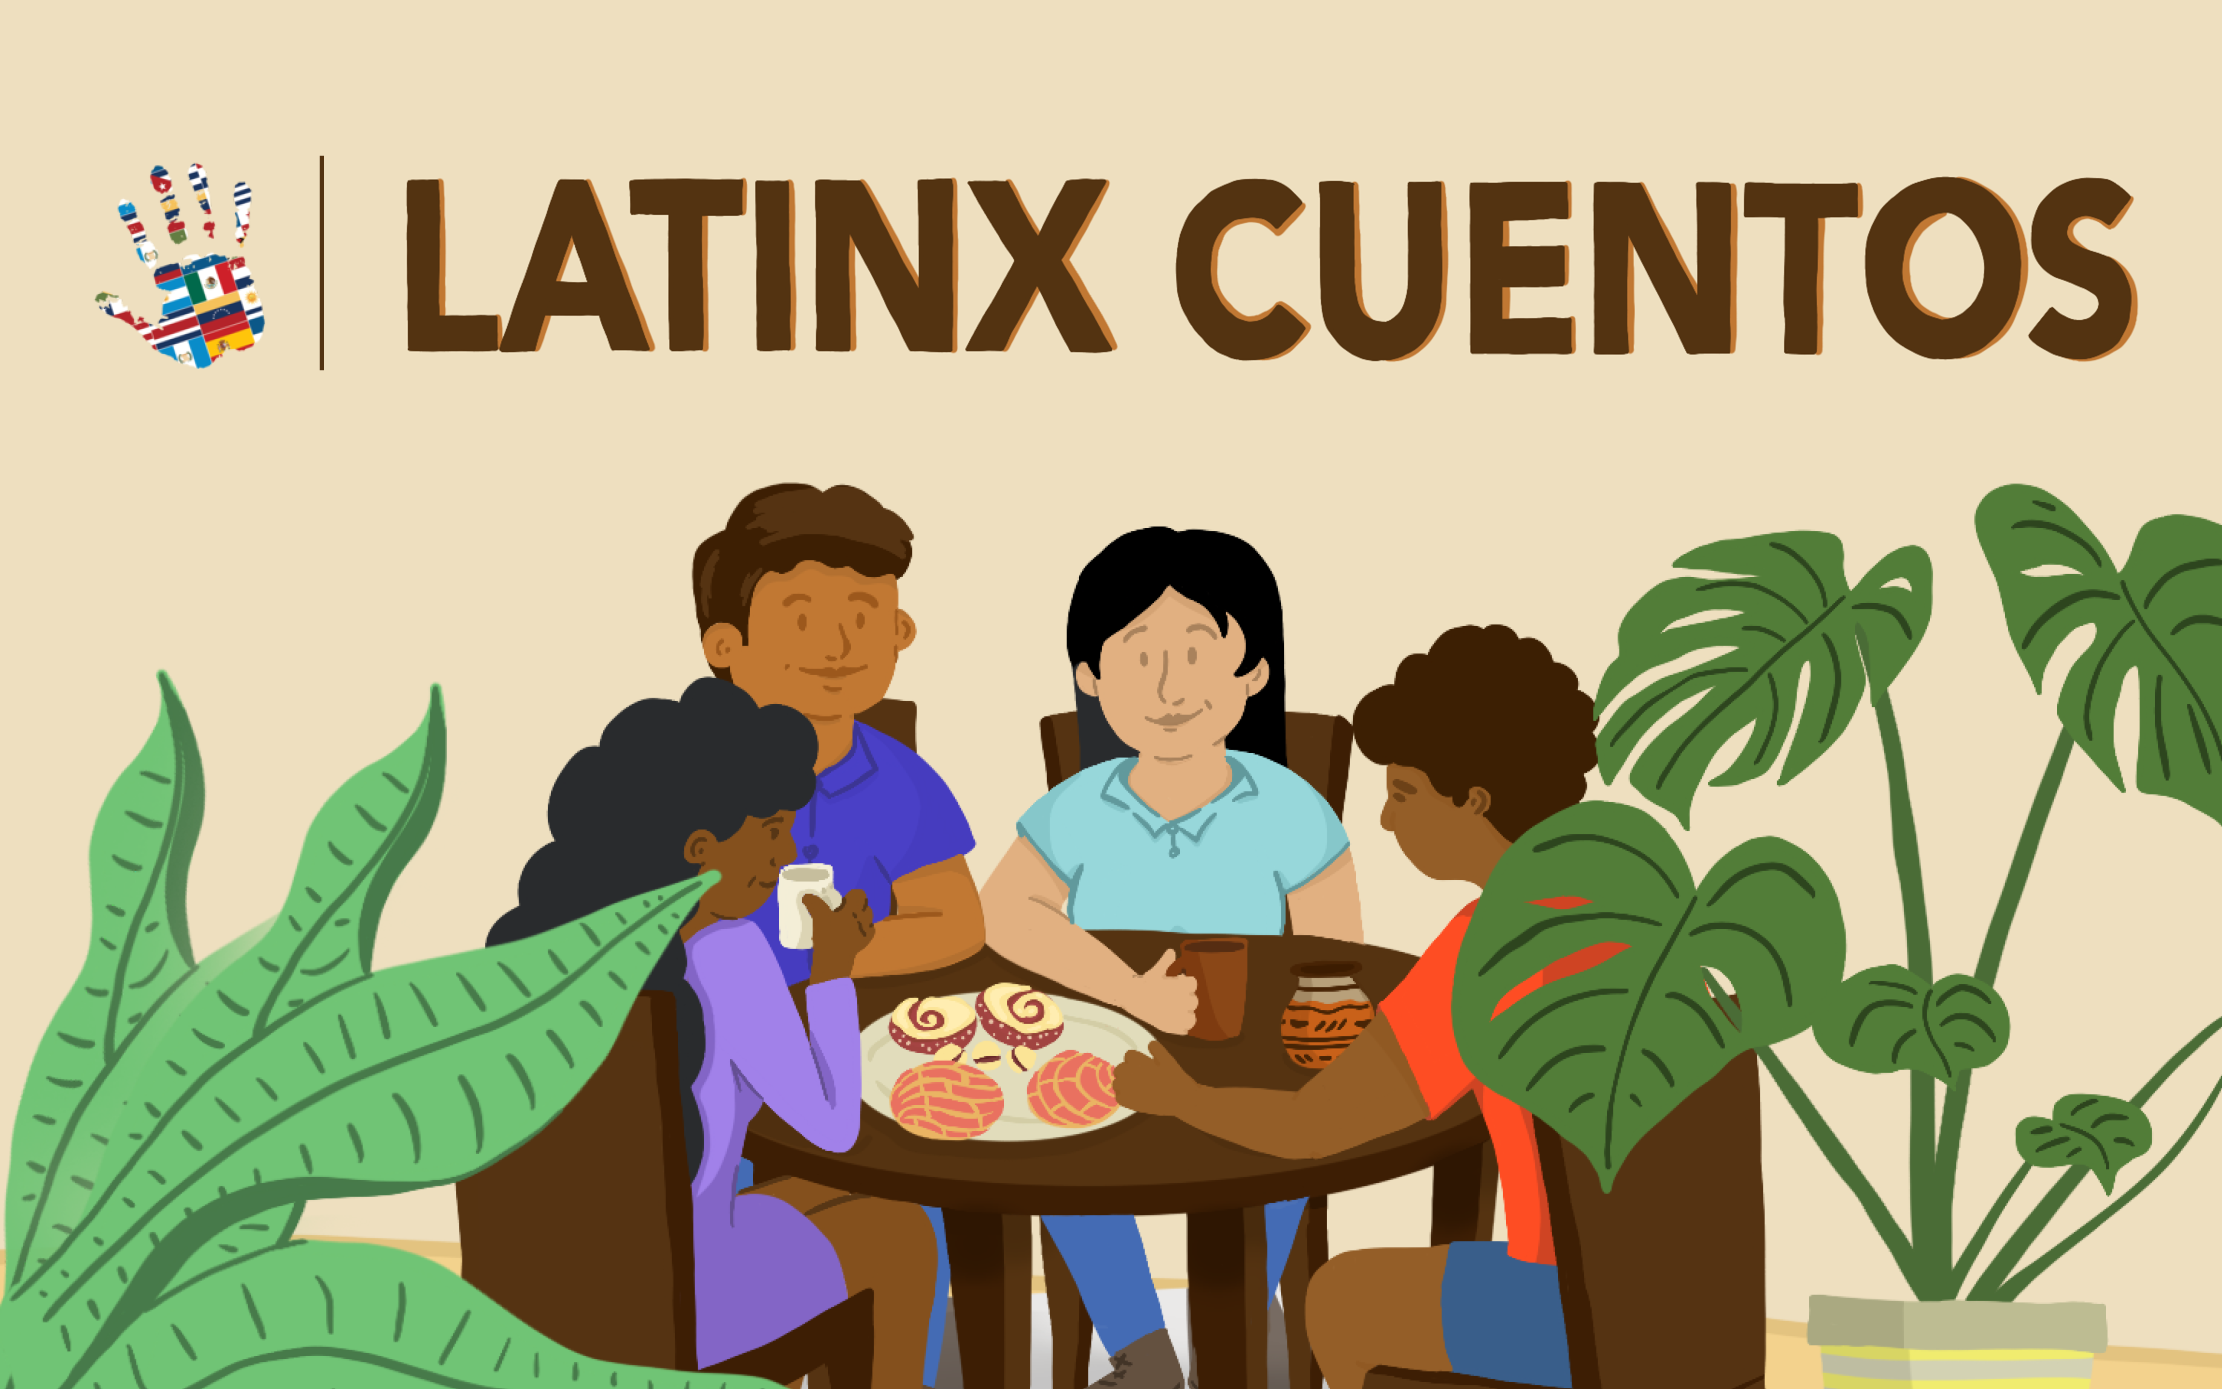 Latinx Cuentos